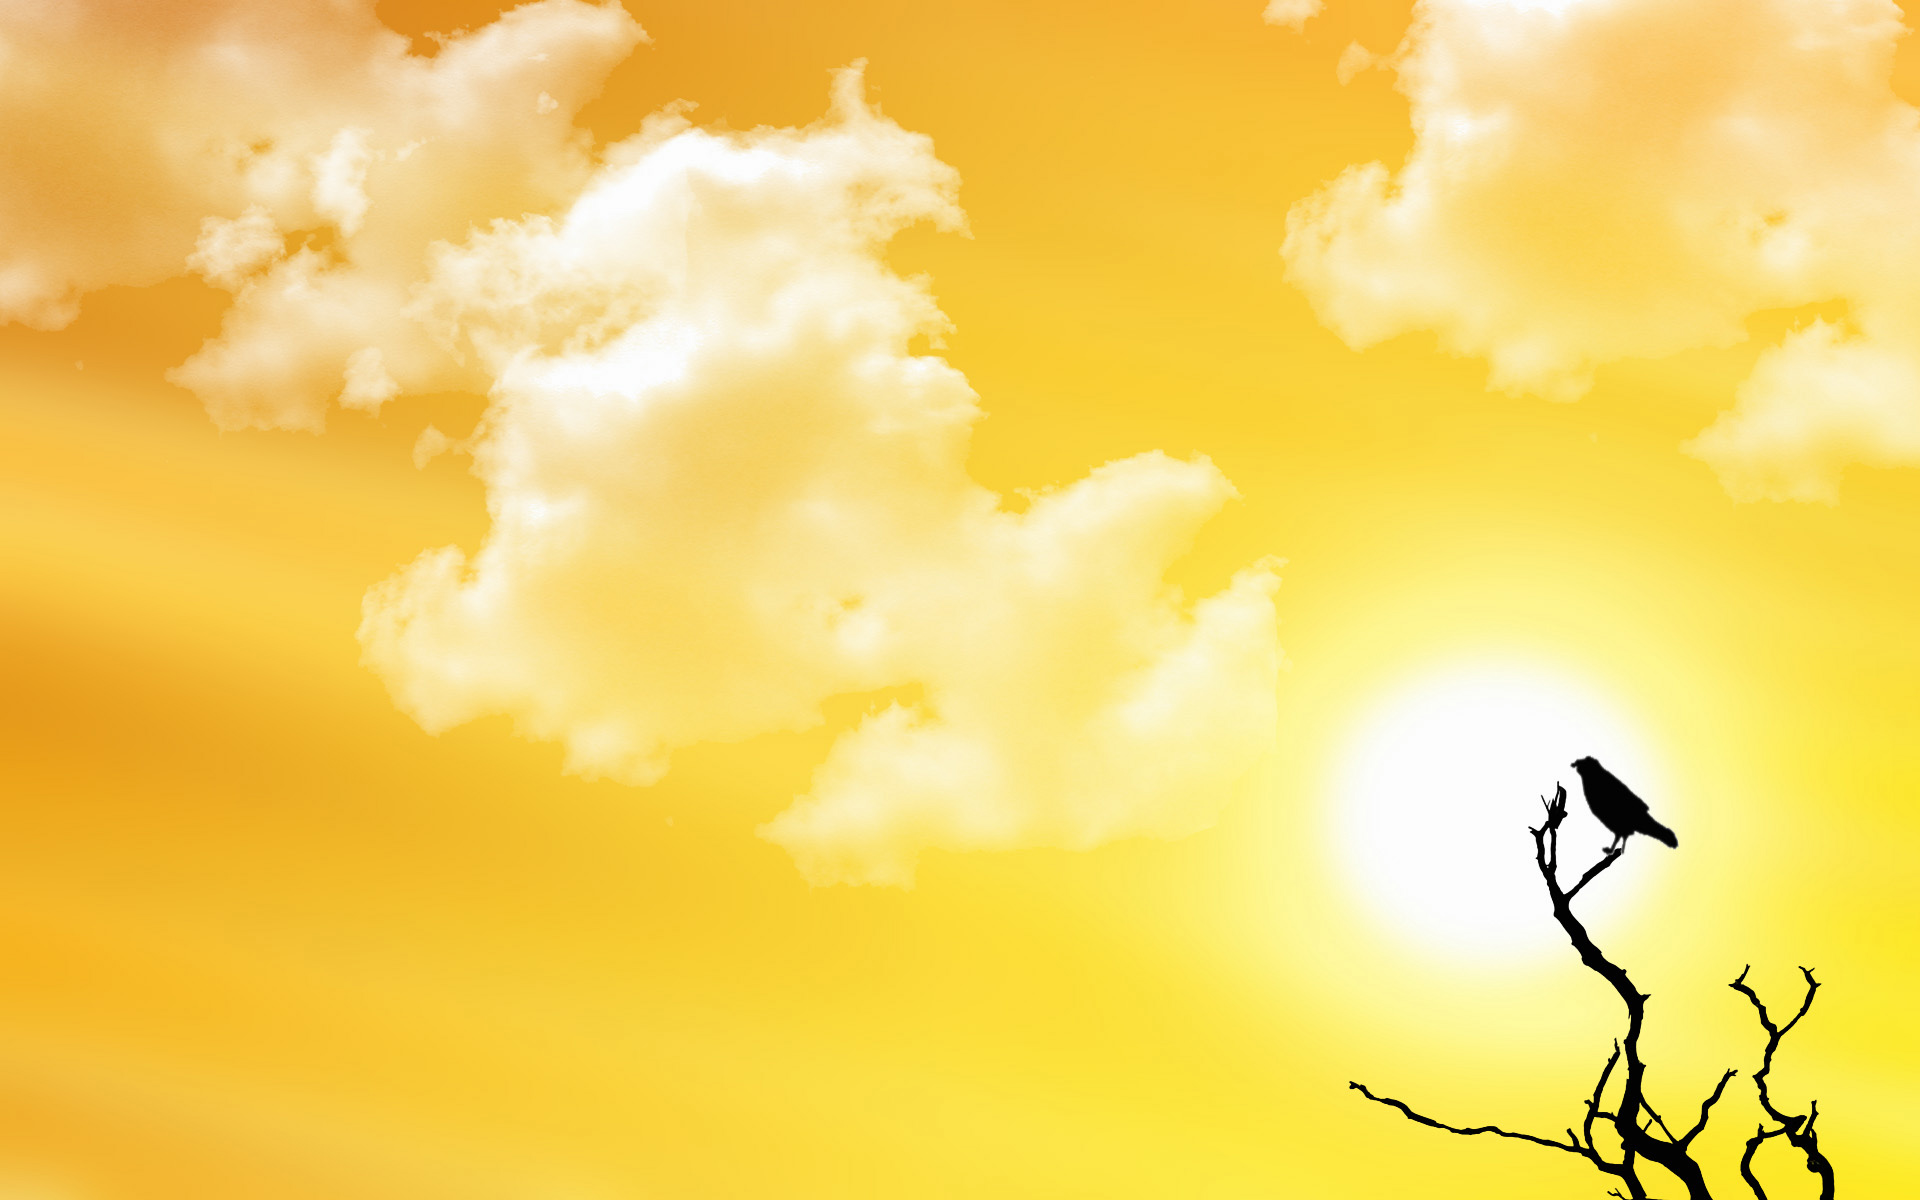 clouds, Sun, birds - desktop wallpaper